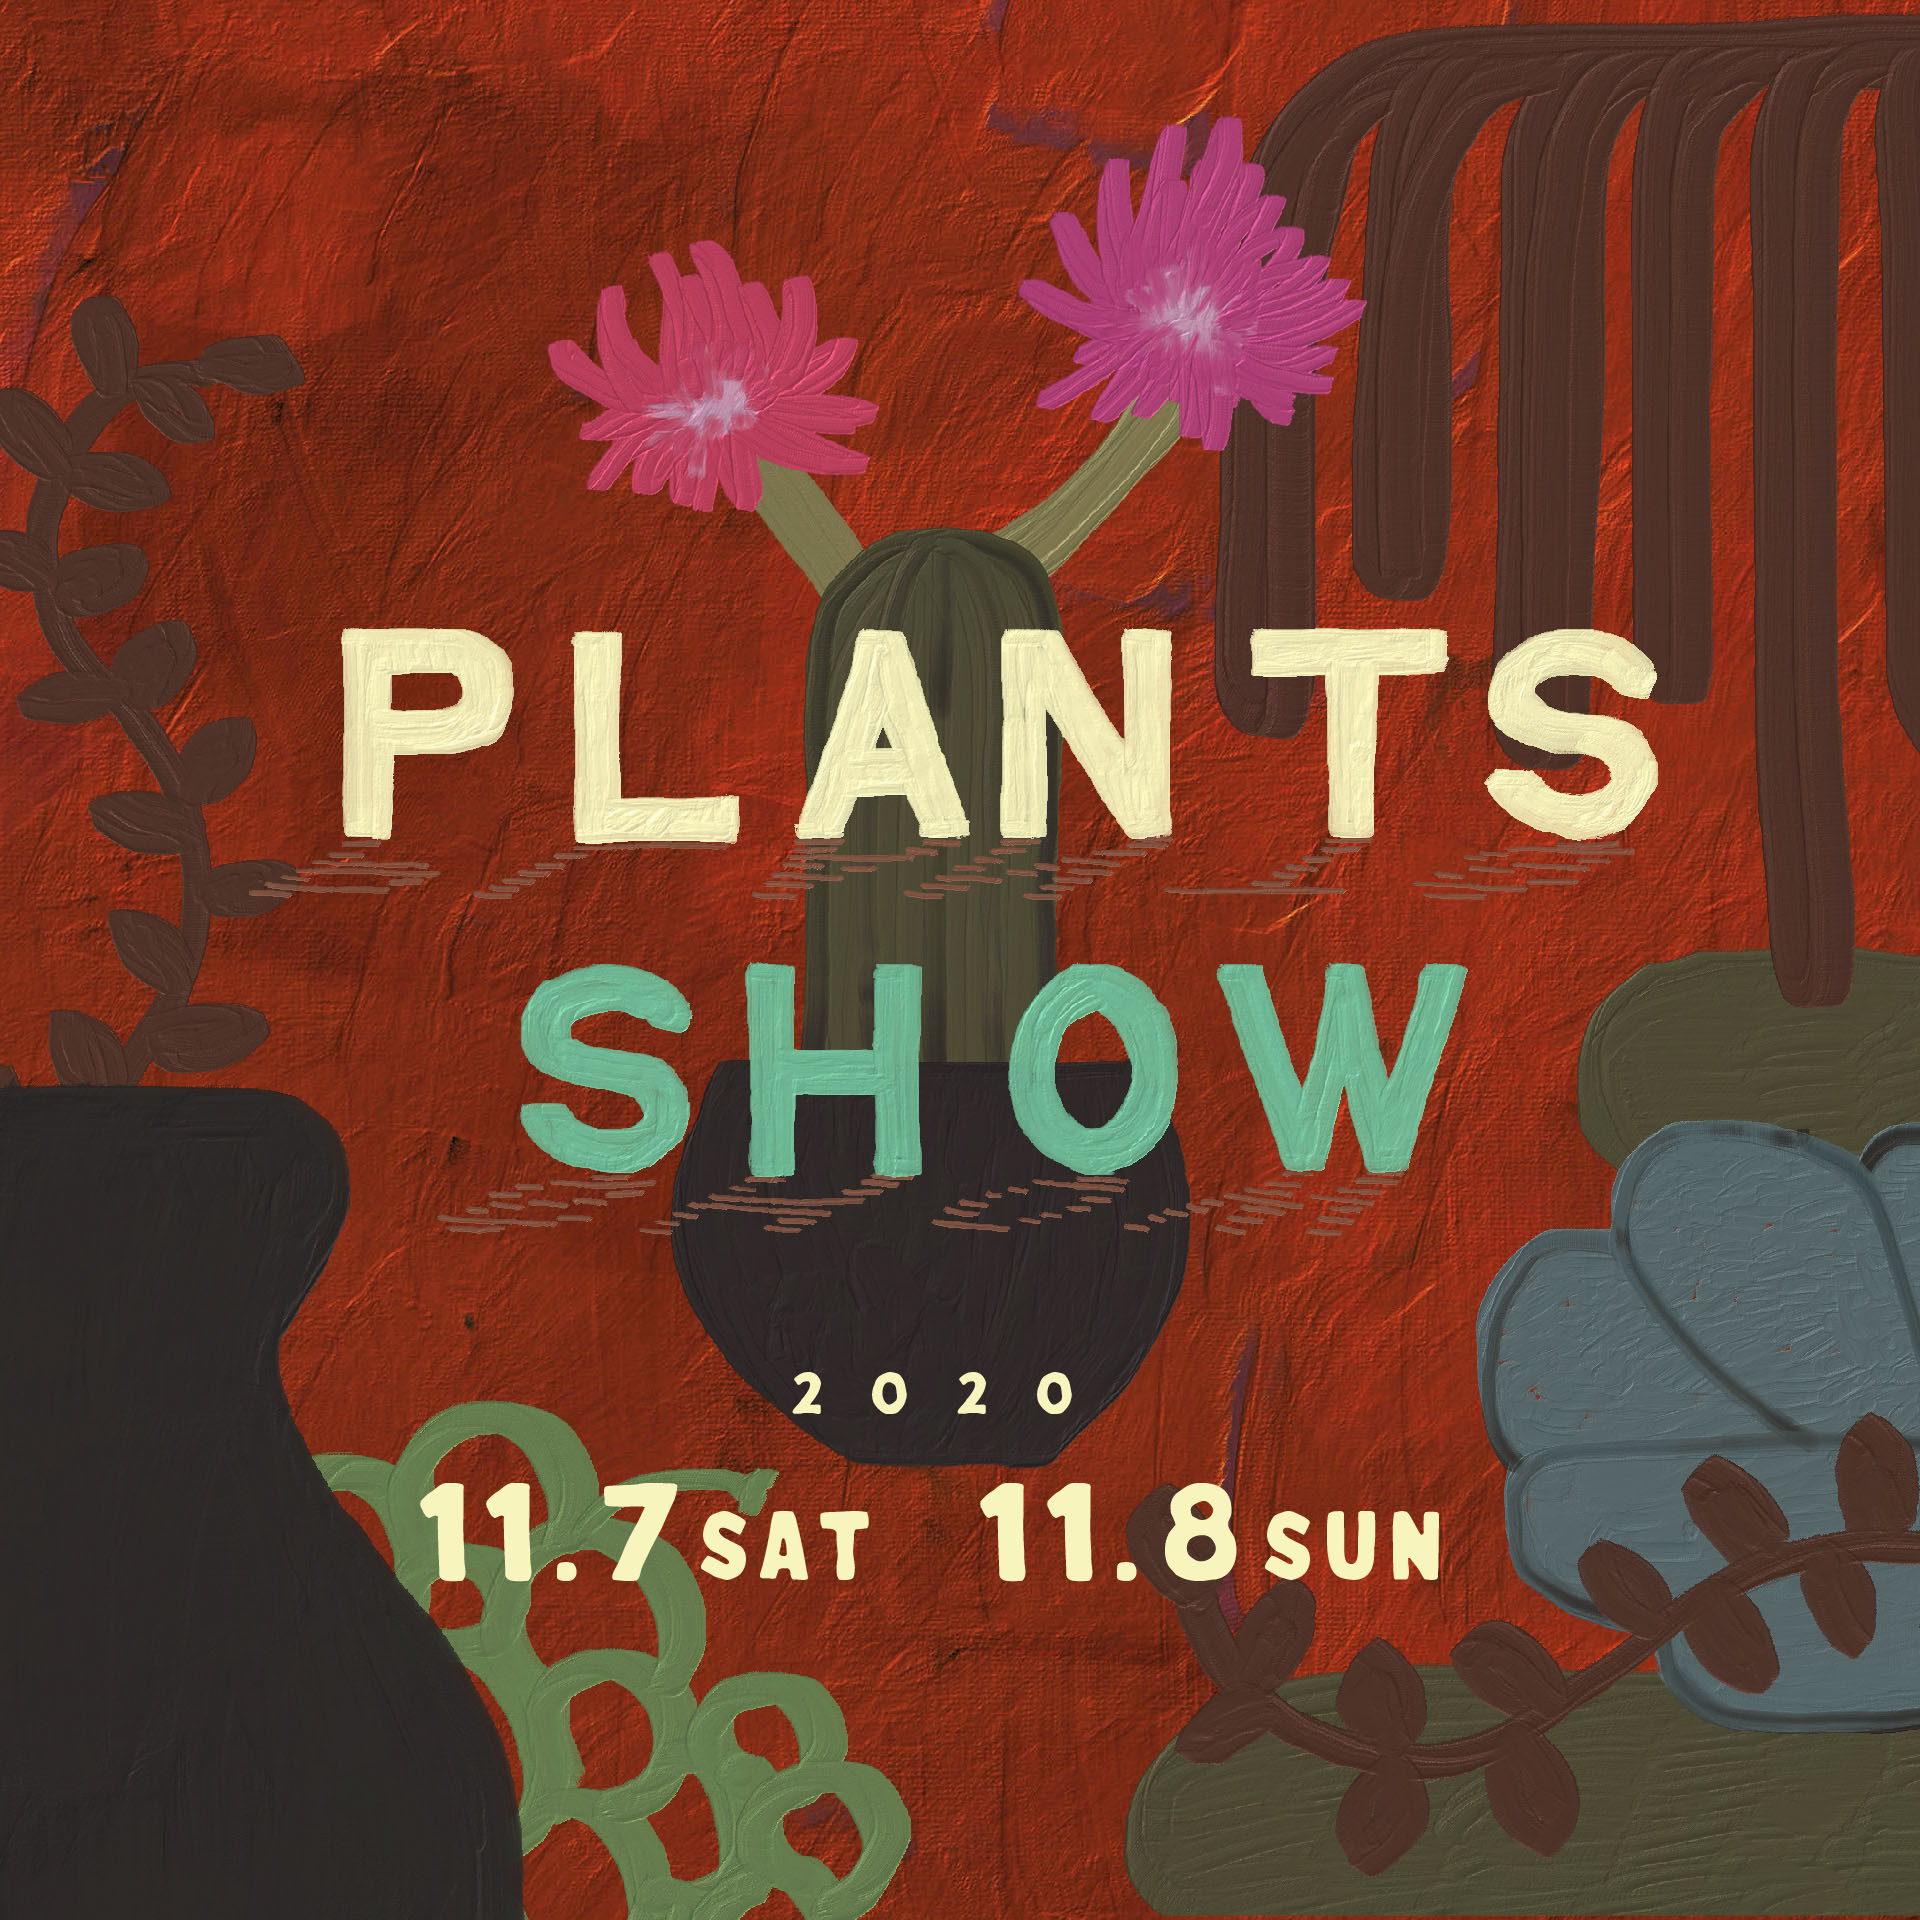 PLANTS SHOW